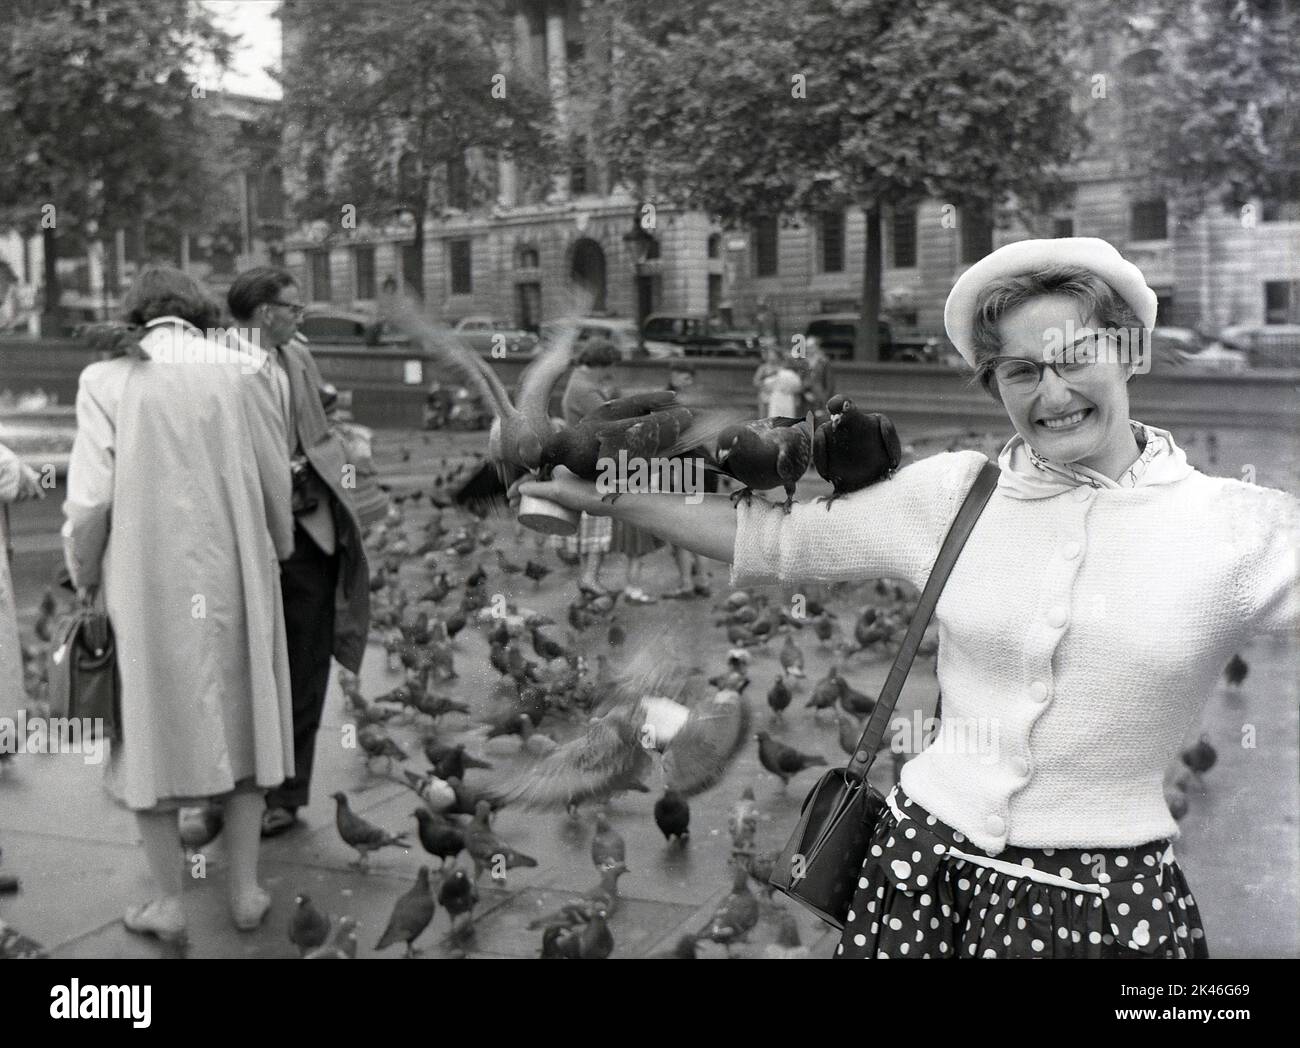 1958, historische Tauben sitzen auf dem ausgestreckten Arm einer aufgeregten Dame am Trafalgar Square, Westminster, London, England, Großbritannien. In ihrer Hand eine kleine Dose Erbsen. Stockfoto